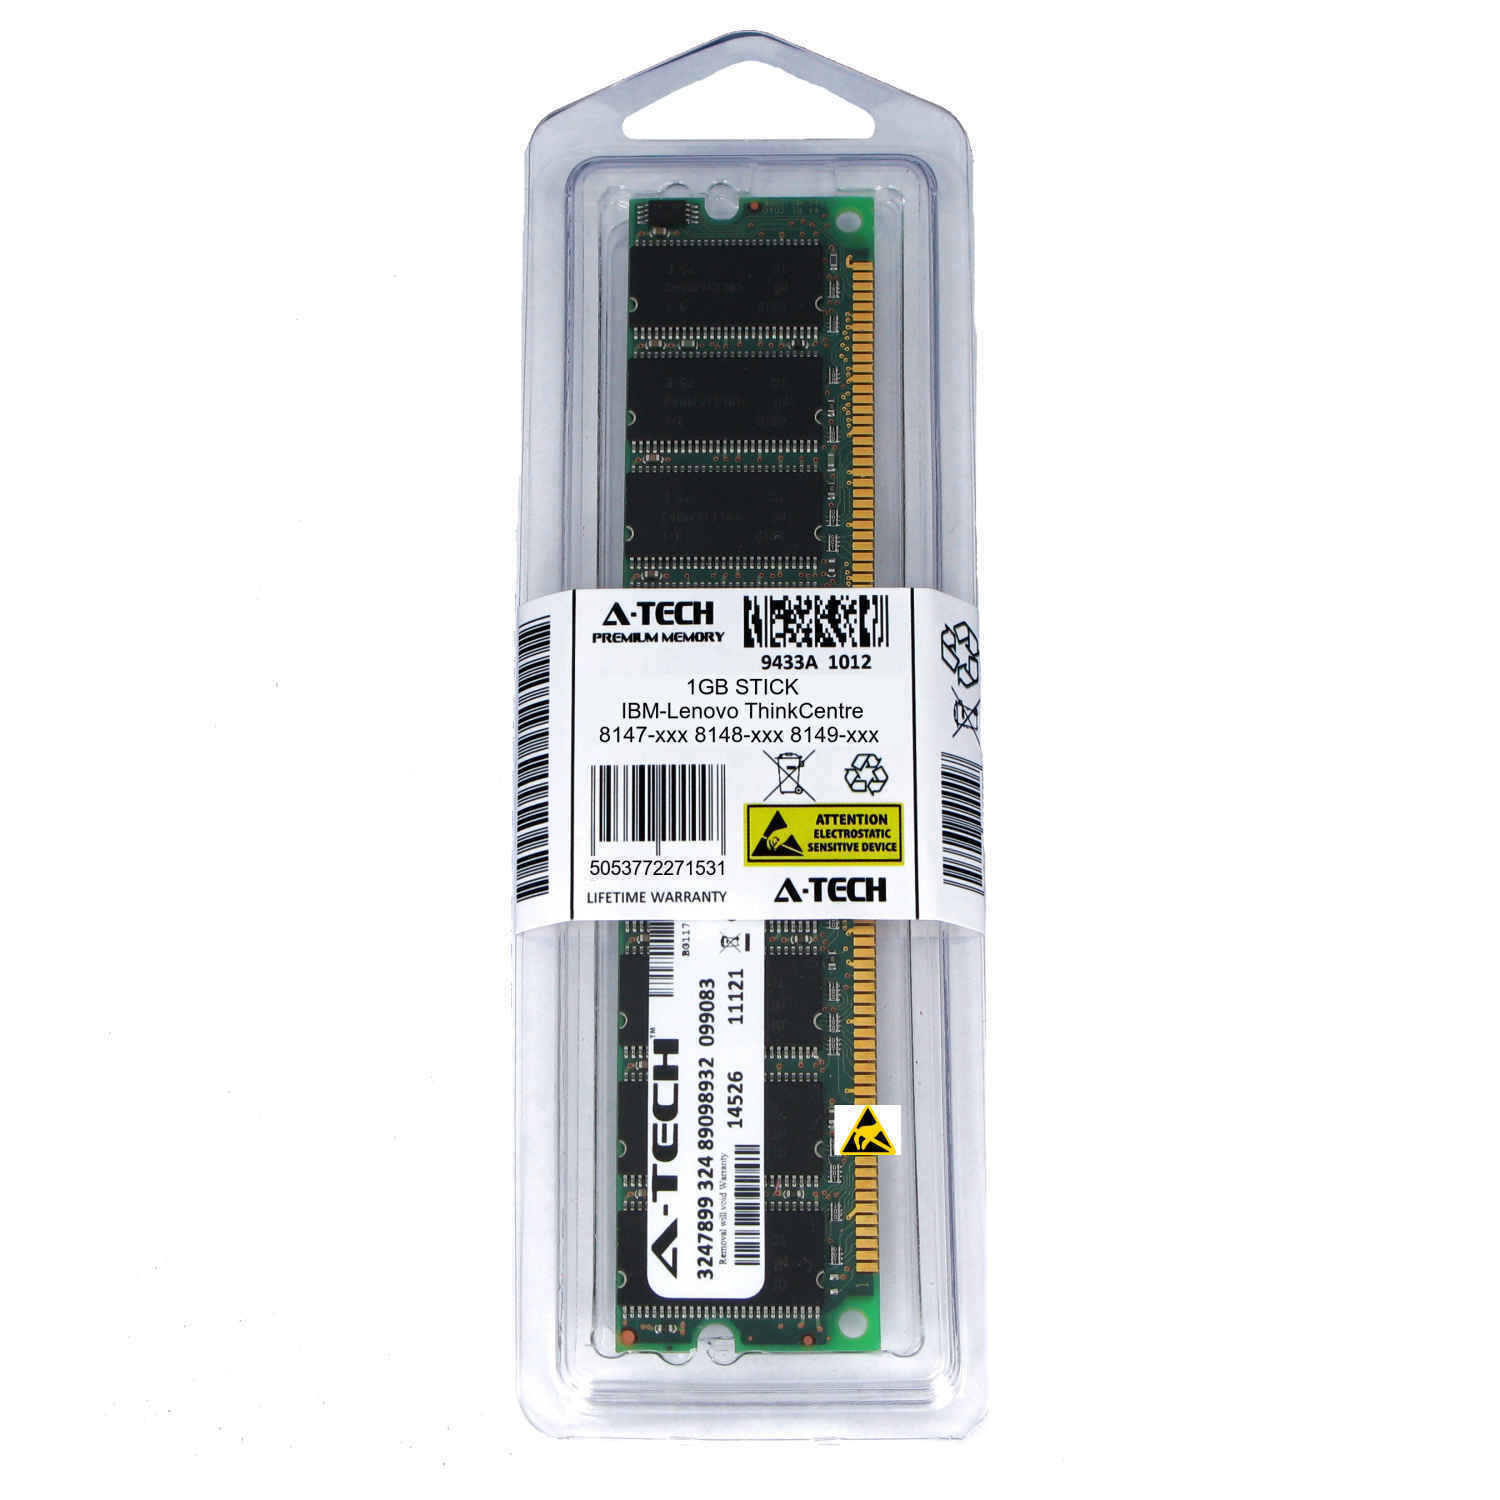 1GB DIMM IBM-Lenovo ThinkCentre 8147-xxx 8148-xxx 8149-xxx PC3200 Ram Memory